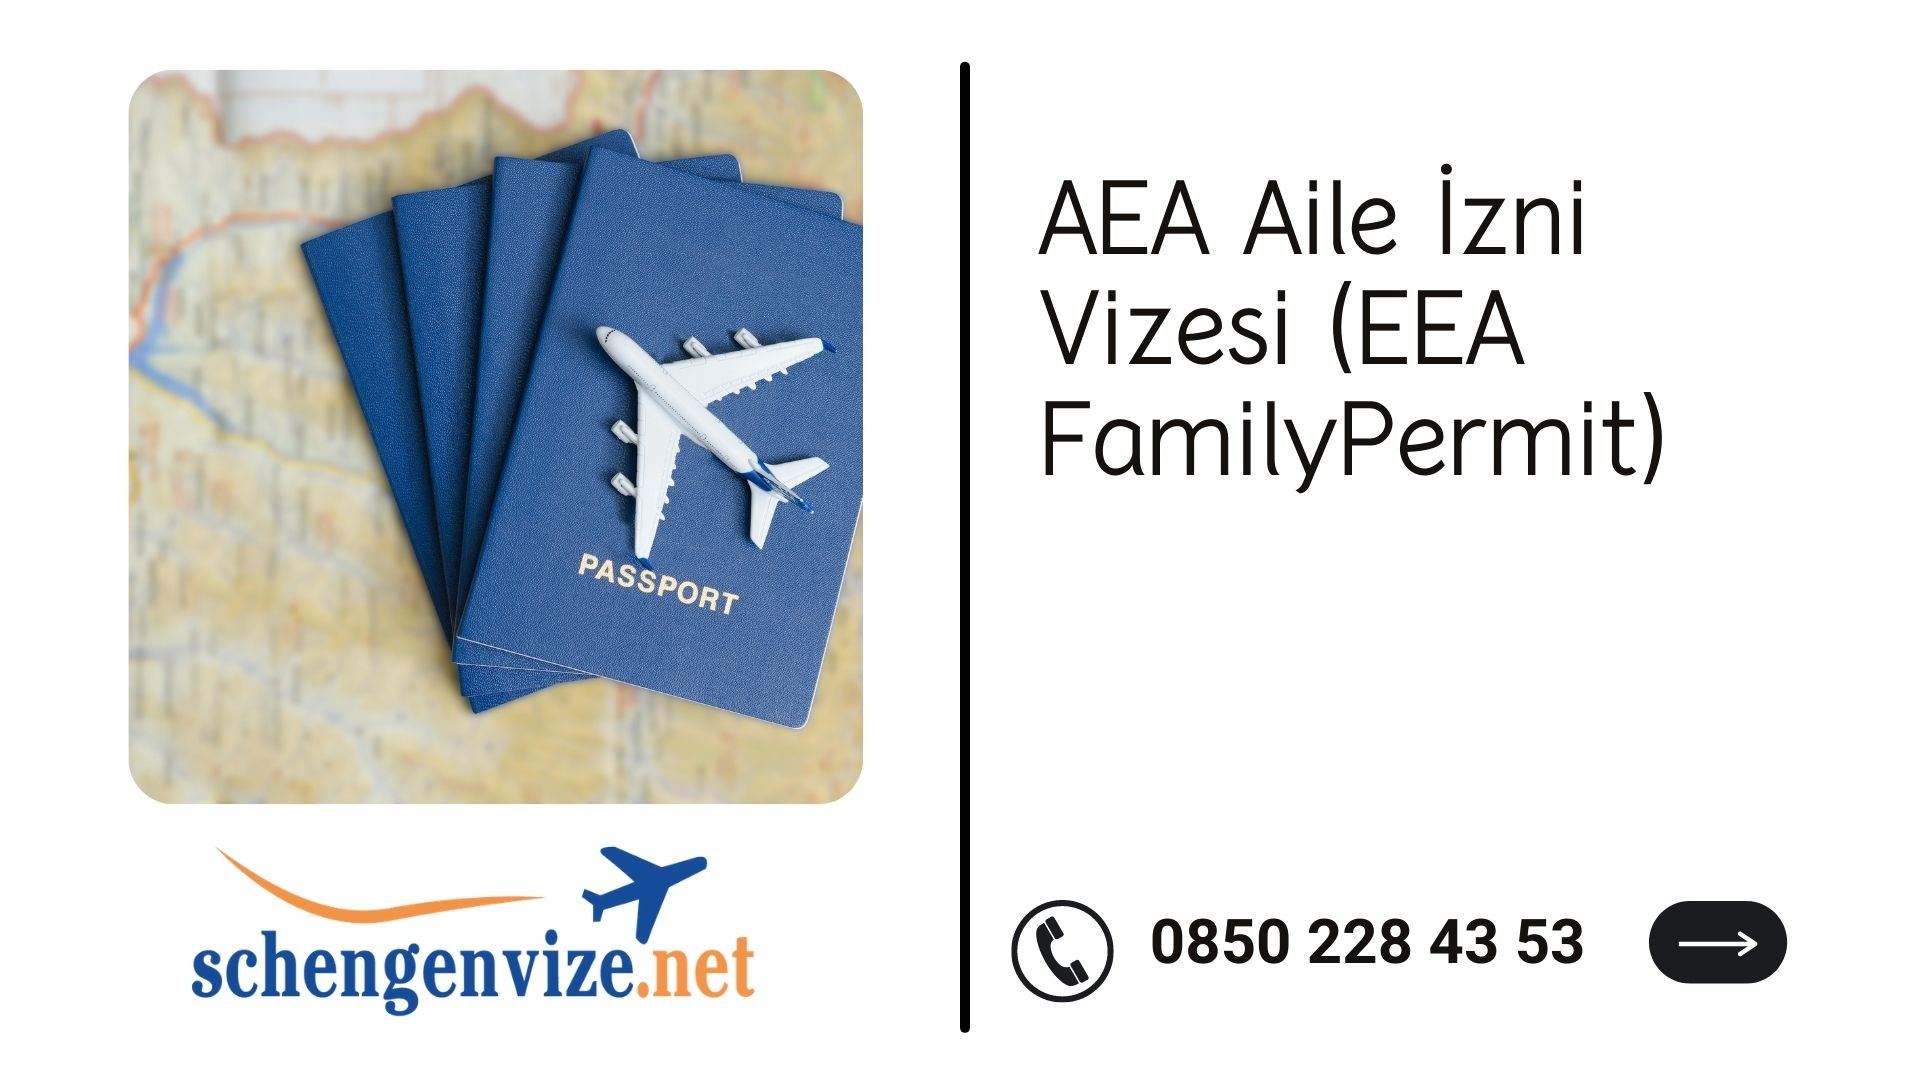 AEA Aile İzni Vizesi (EEA Family Permit)